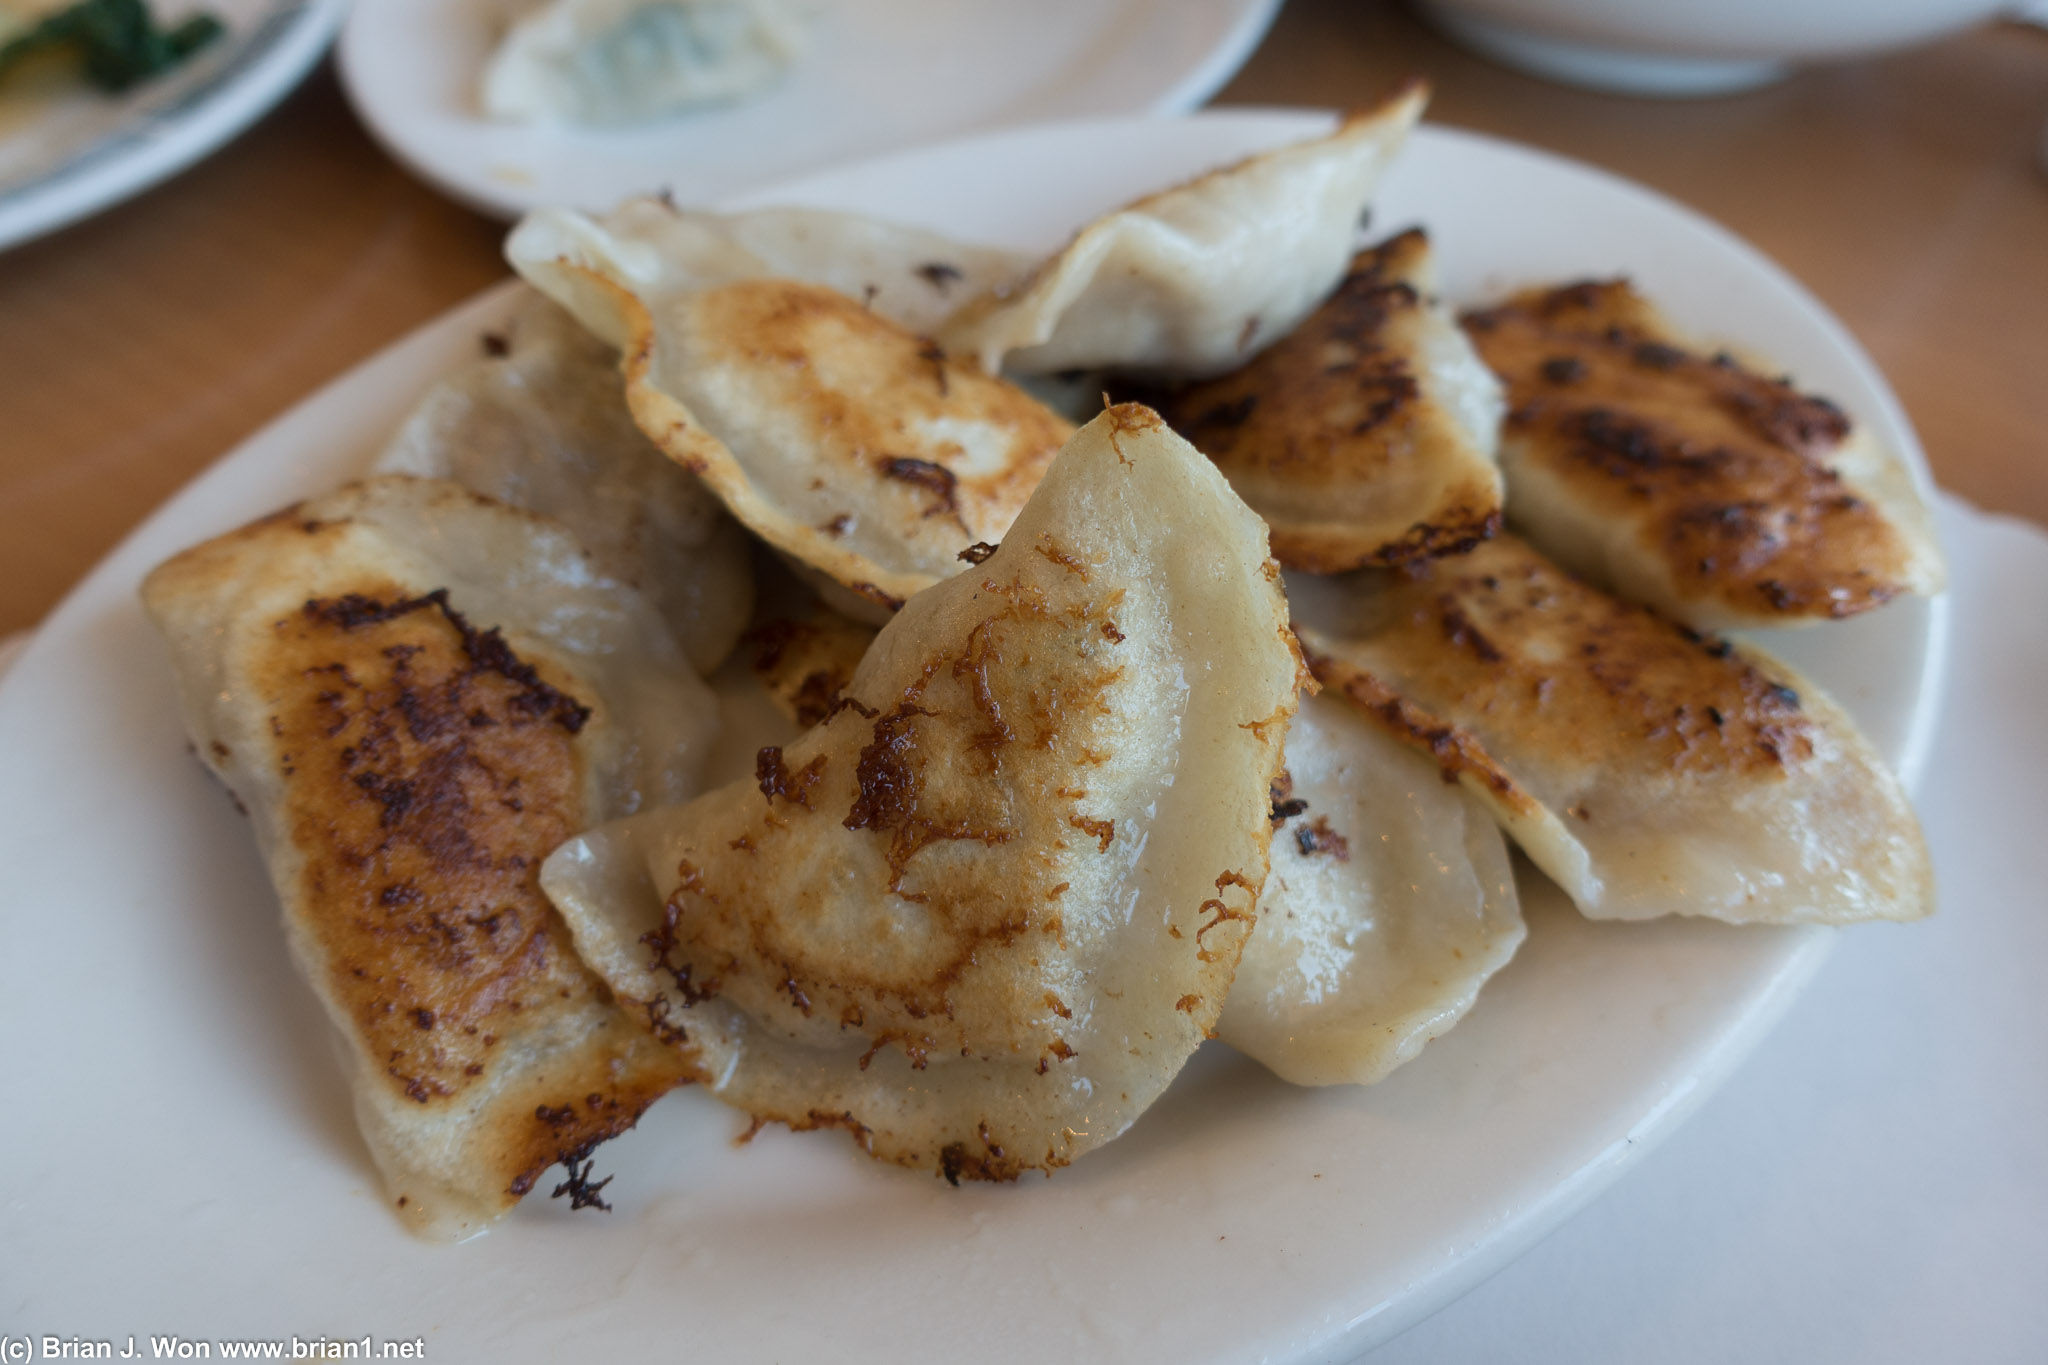 Fish dumplings. NOM.